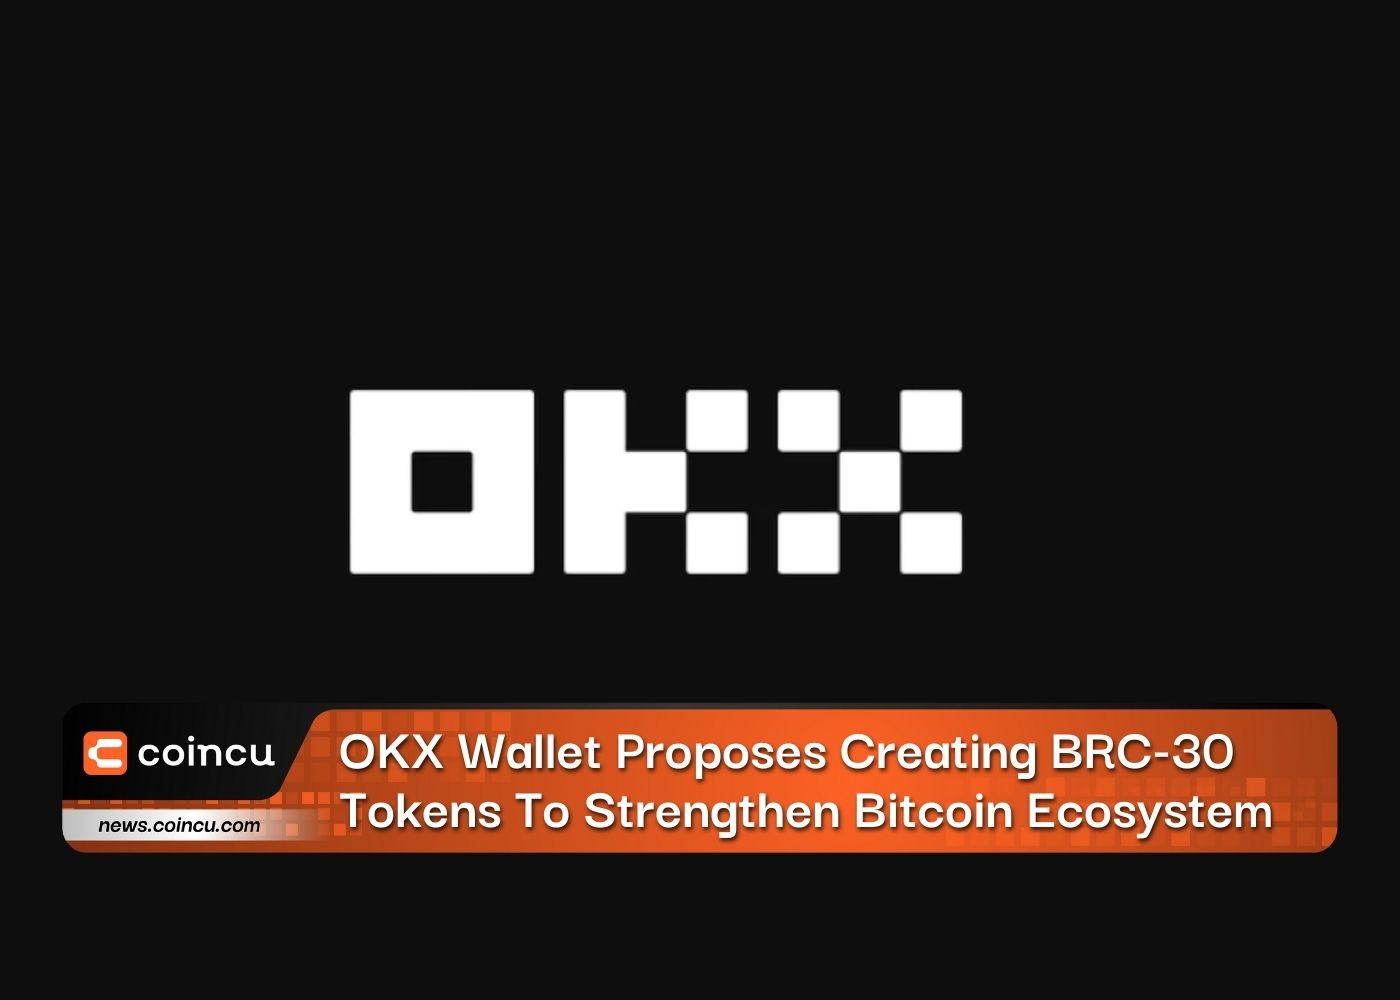 Carteira OKX propõe a criação de tokens BRC-30 para fortalecer o ecossistema Bitcoin